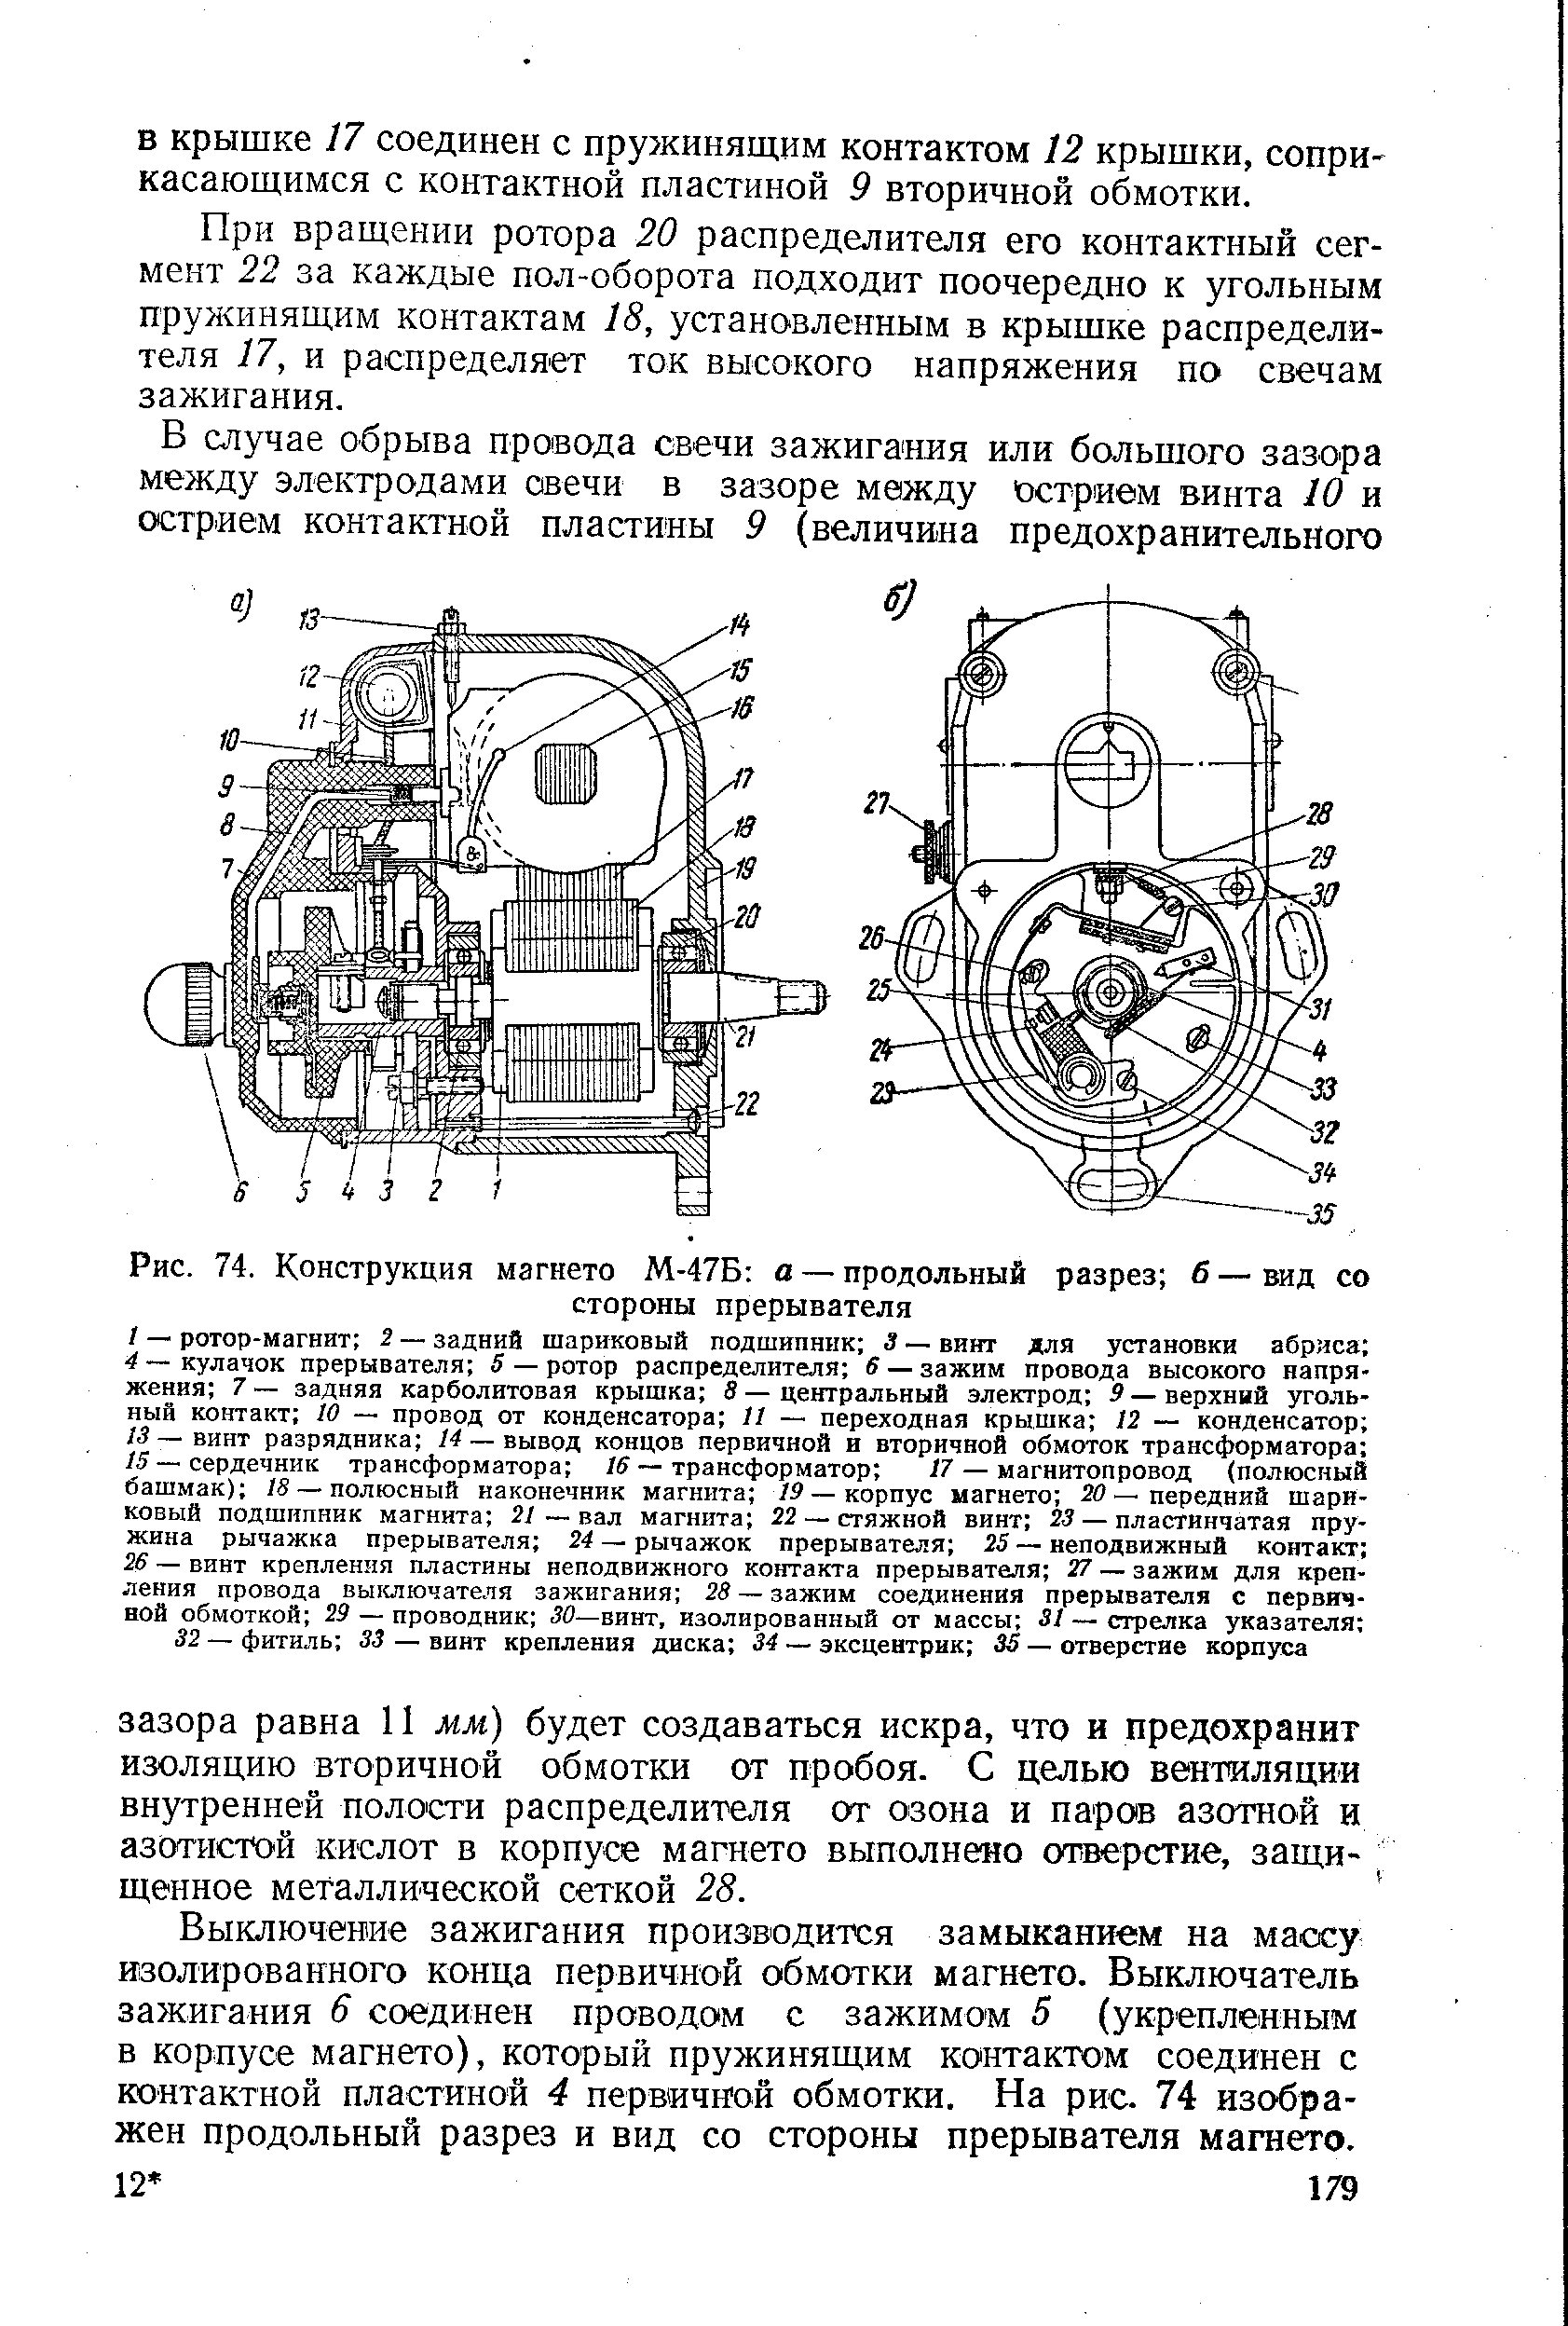 Рис. 74. Конструкция магнето М-47Б а — продольный разрез б — вид со
